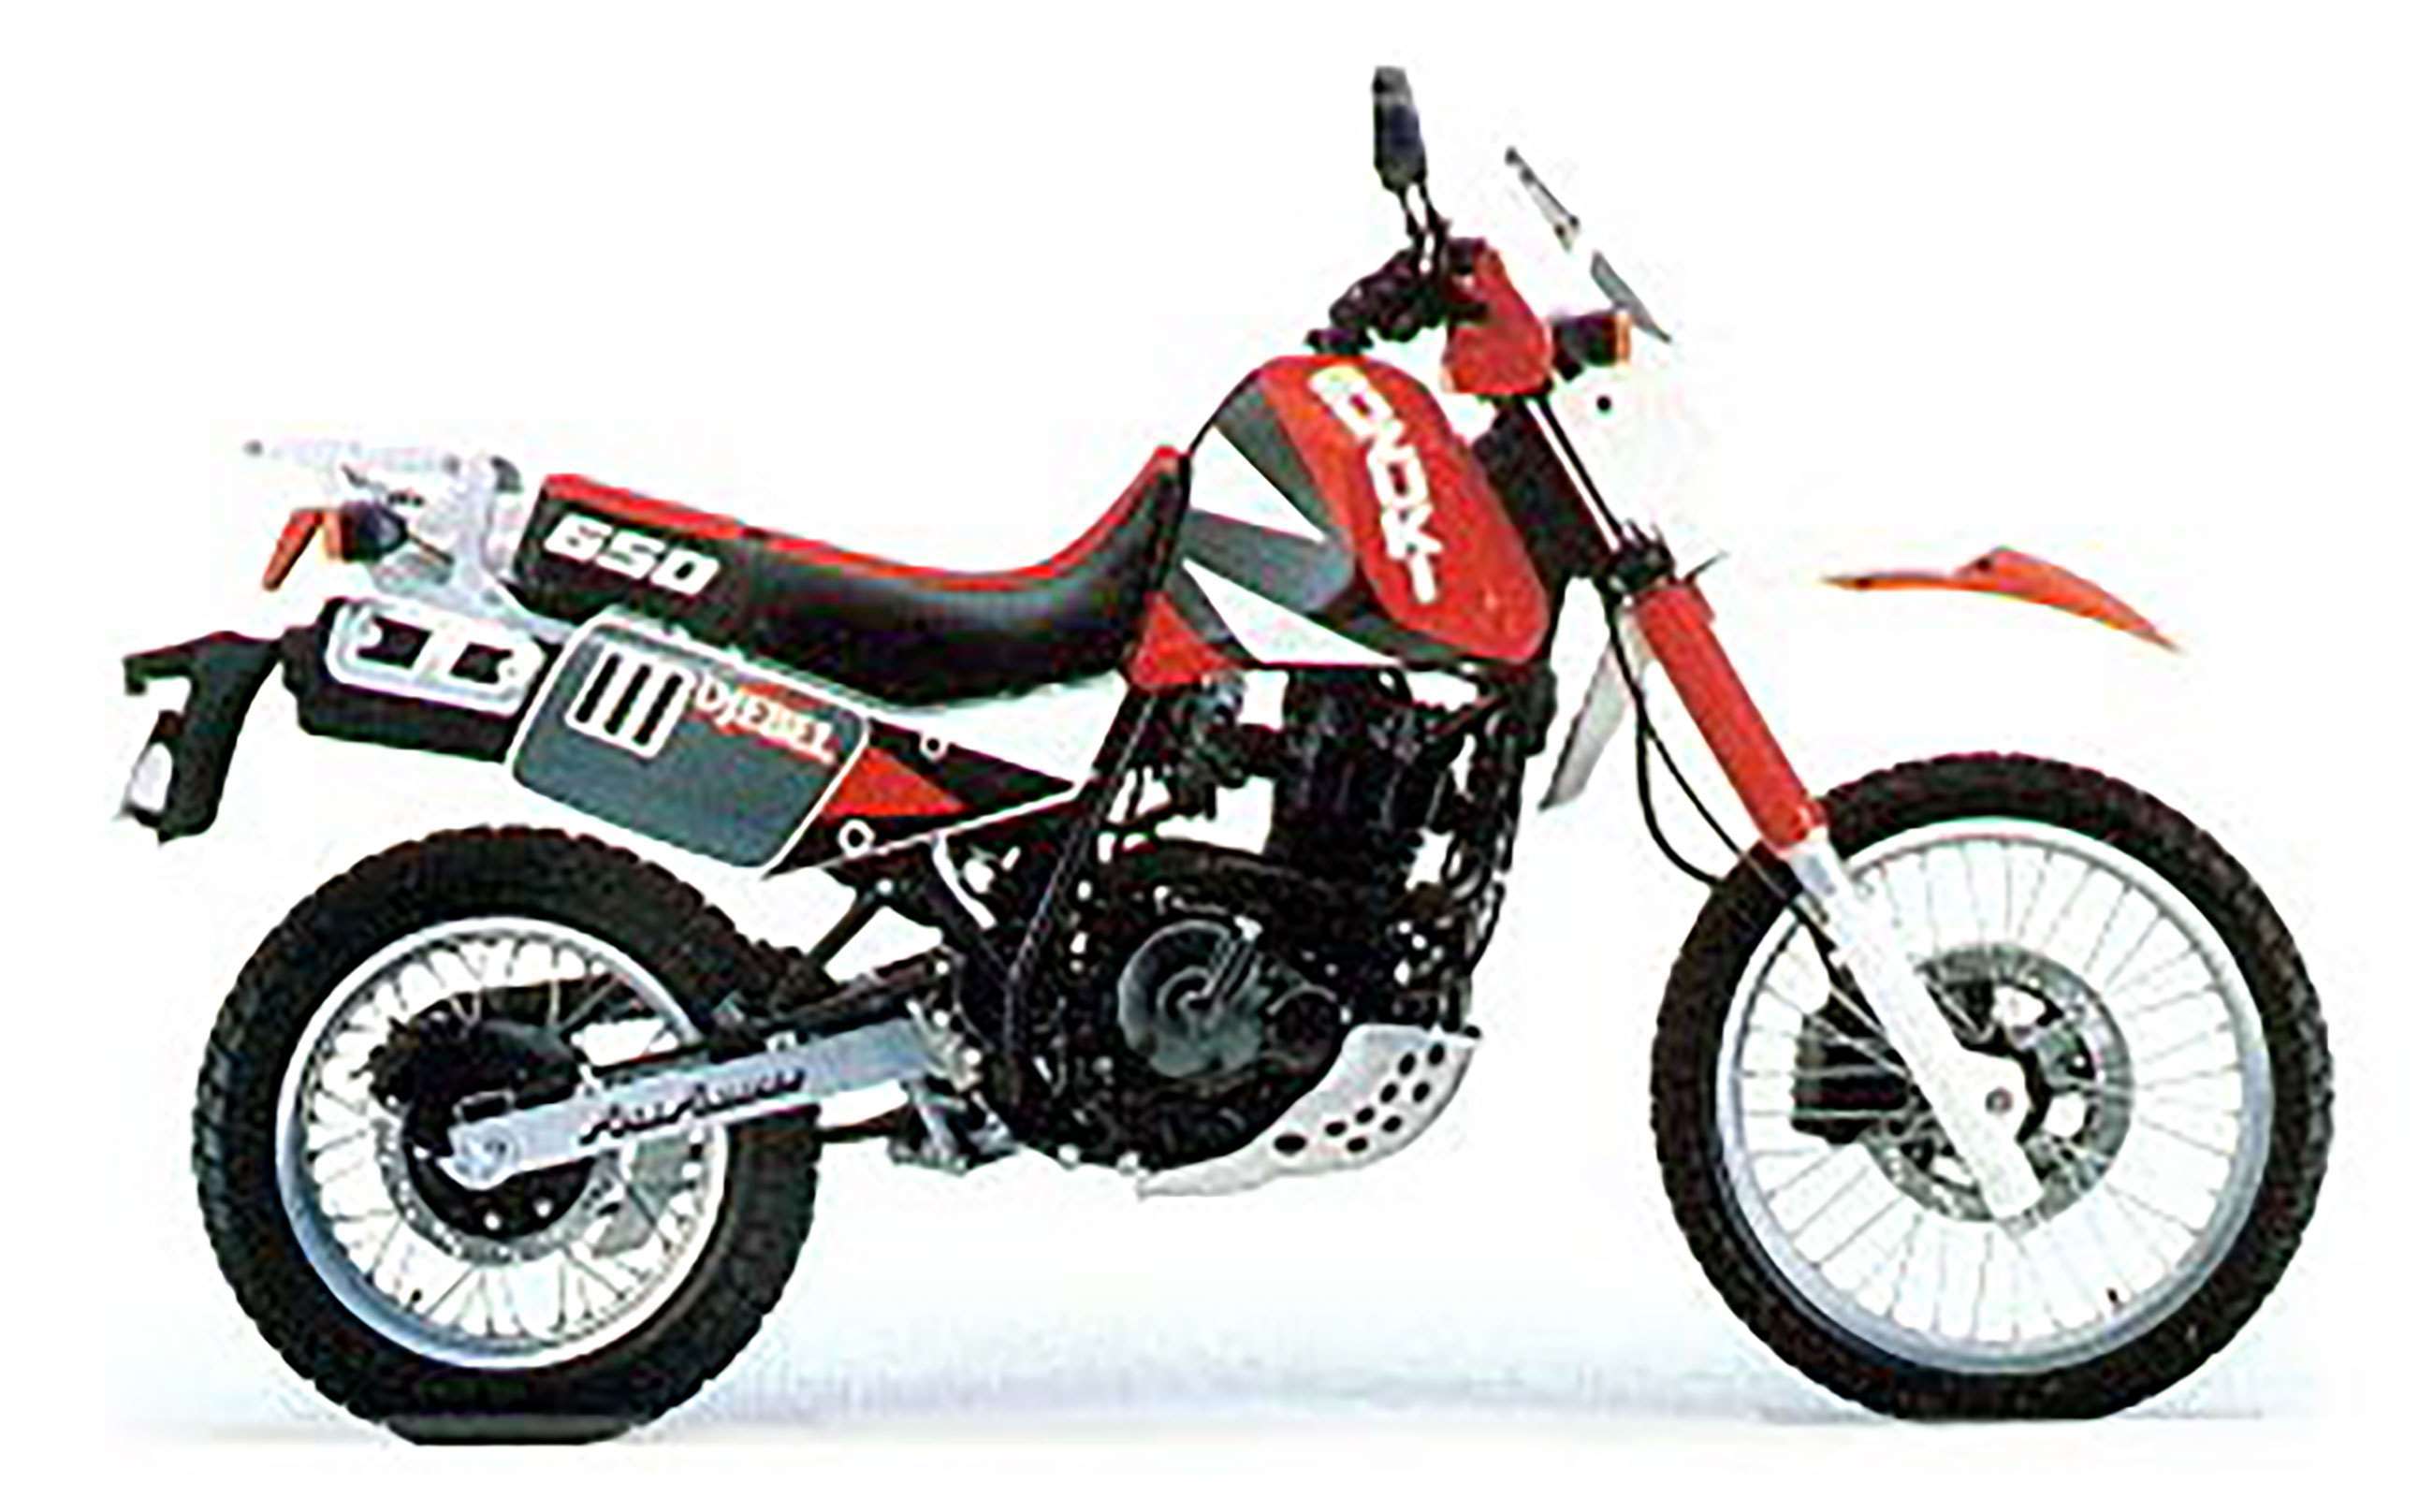 best-bikes-of-the-nineties-2-suzuki-dr650-goodwood-07052020.jpg